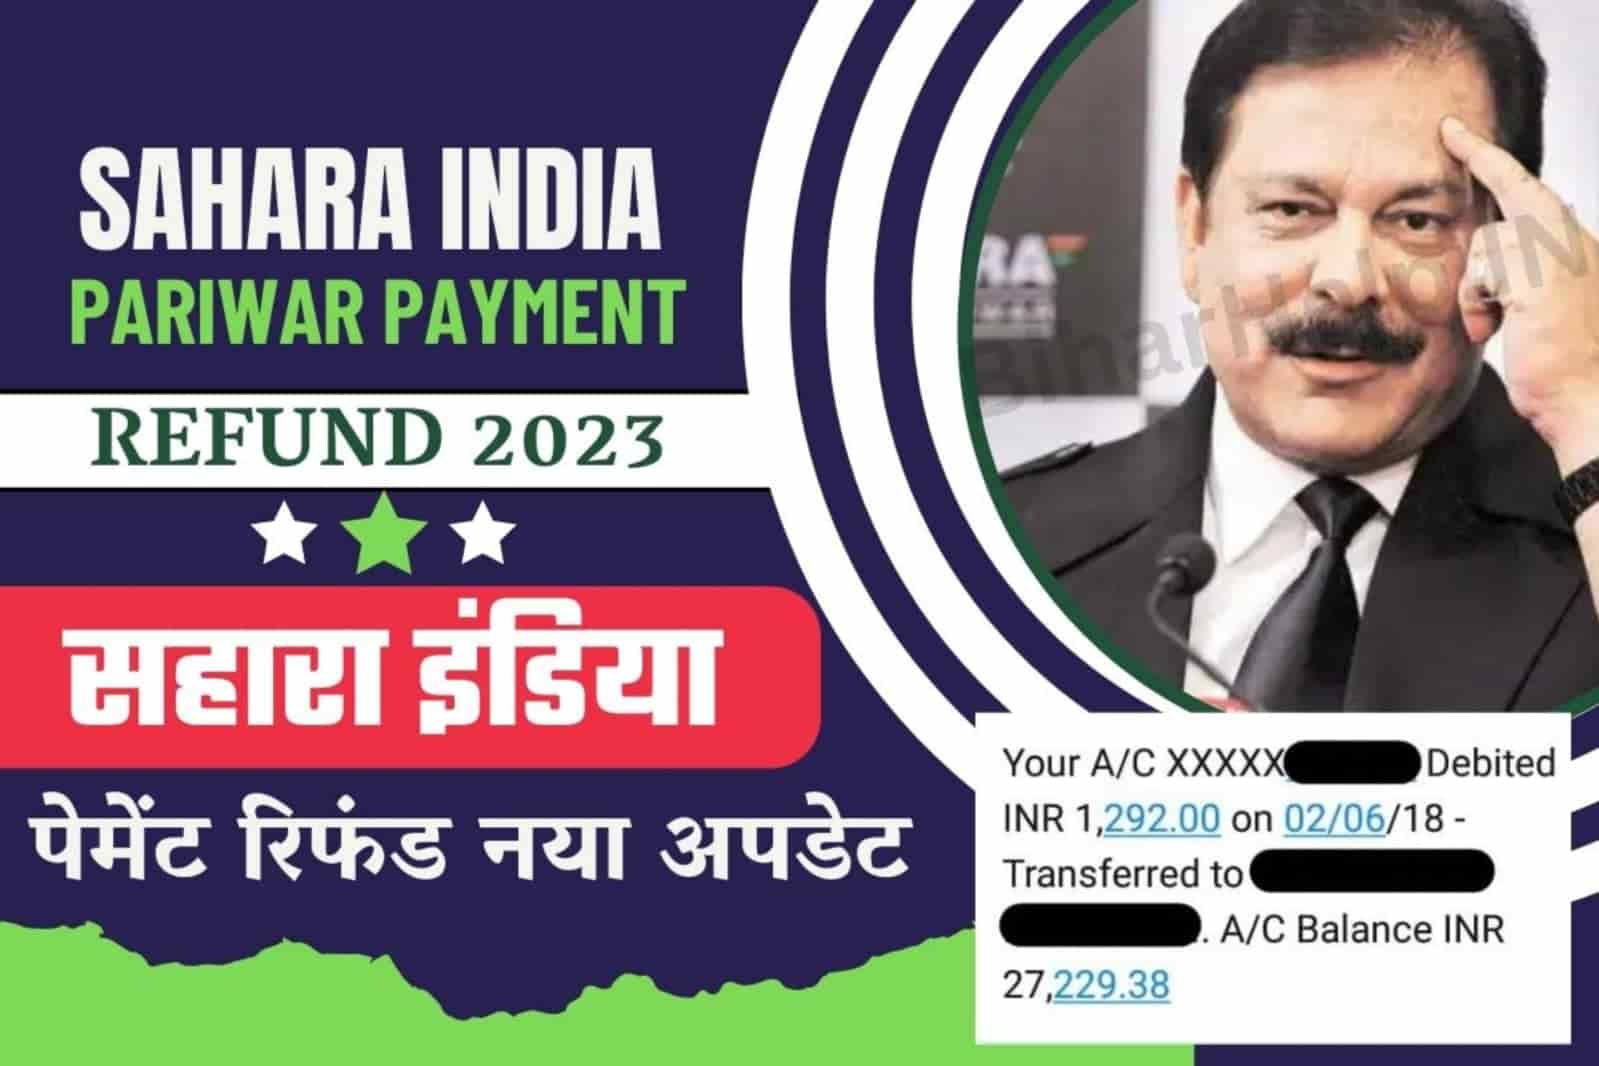 Sahara India Pariwar Payment Refund 2023